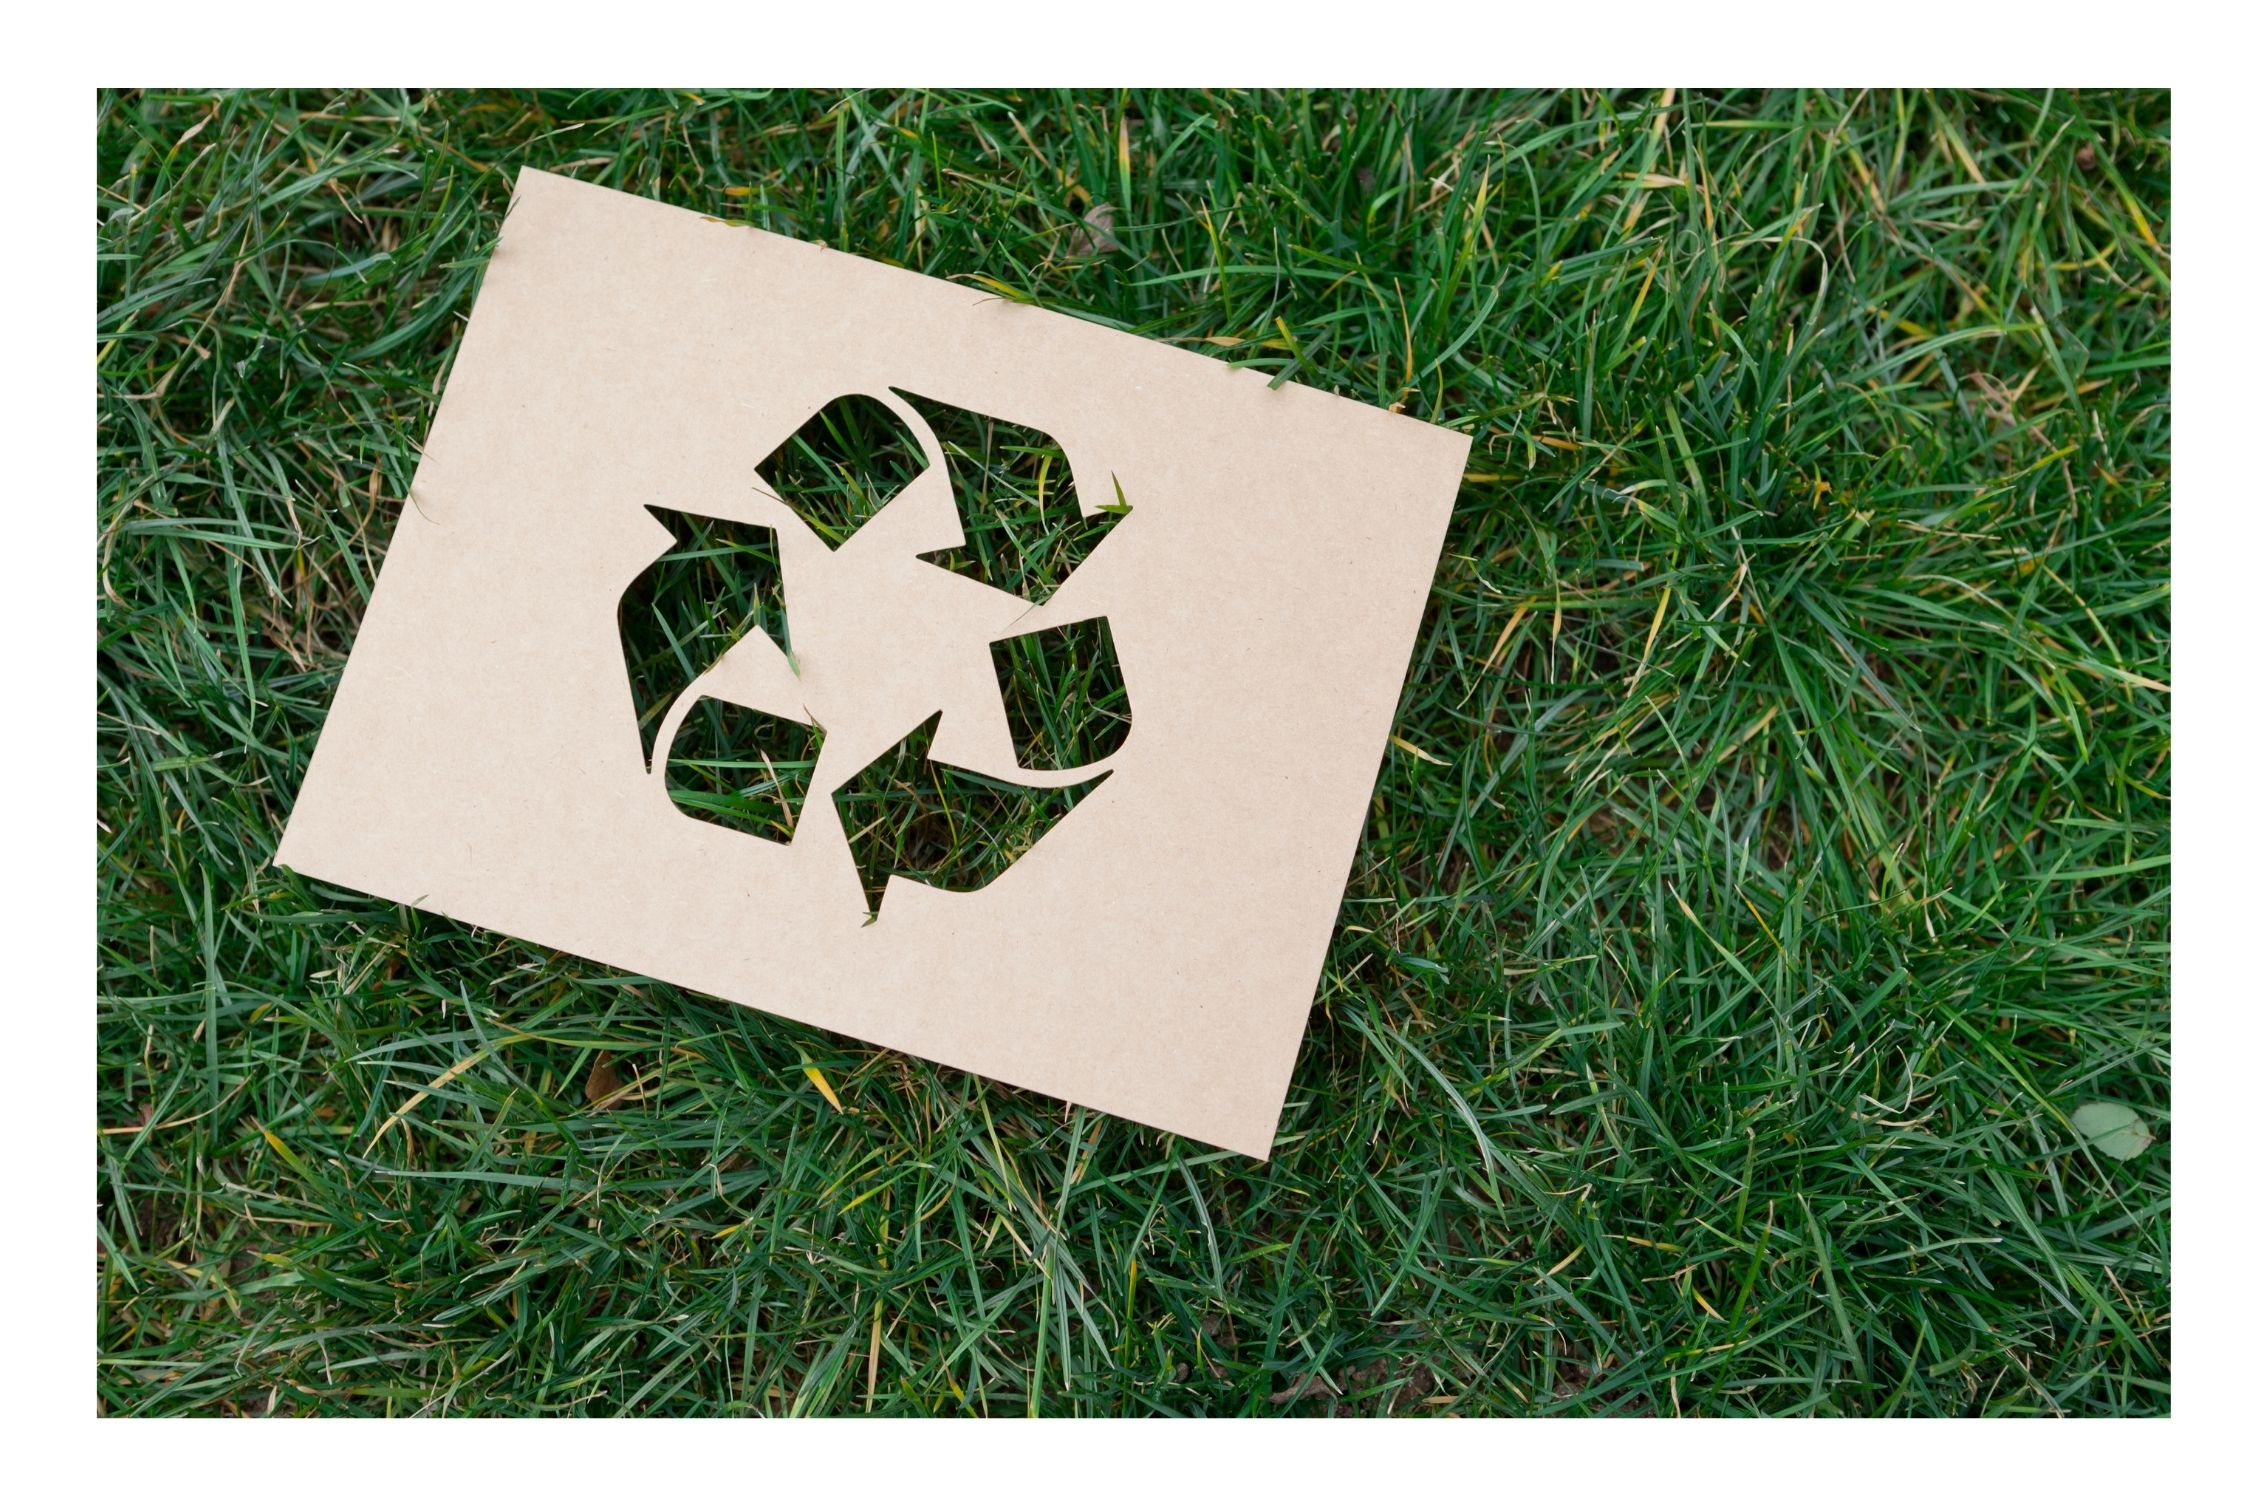 Gute Recyclingquoten durch Einsatz nachhaltiger Materialien